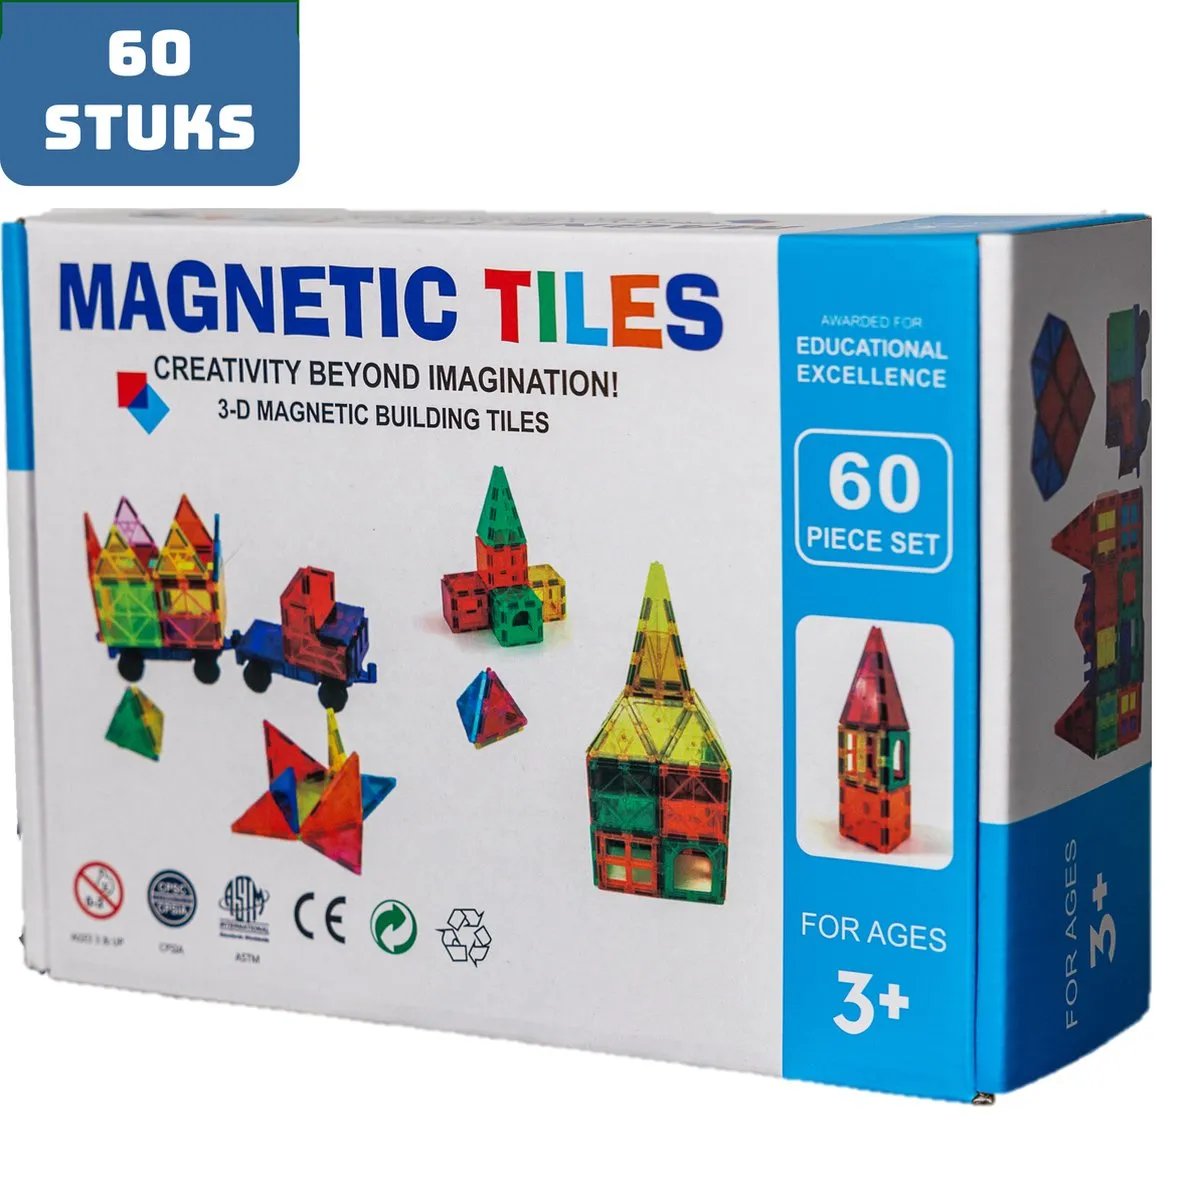 Magnetic Tiles - Magnaminds - Magna tiles - Magnetisch Speelgoed – 60 stuks - Constructie speelgoed - Magnetische tegels - Montessori speelgoed - Magnetic toys - Magnetische bouwstenen - Speelgoed 3-12 jaar - Magnetische Bouwblokken speelgoed